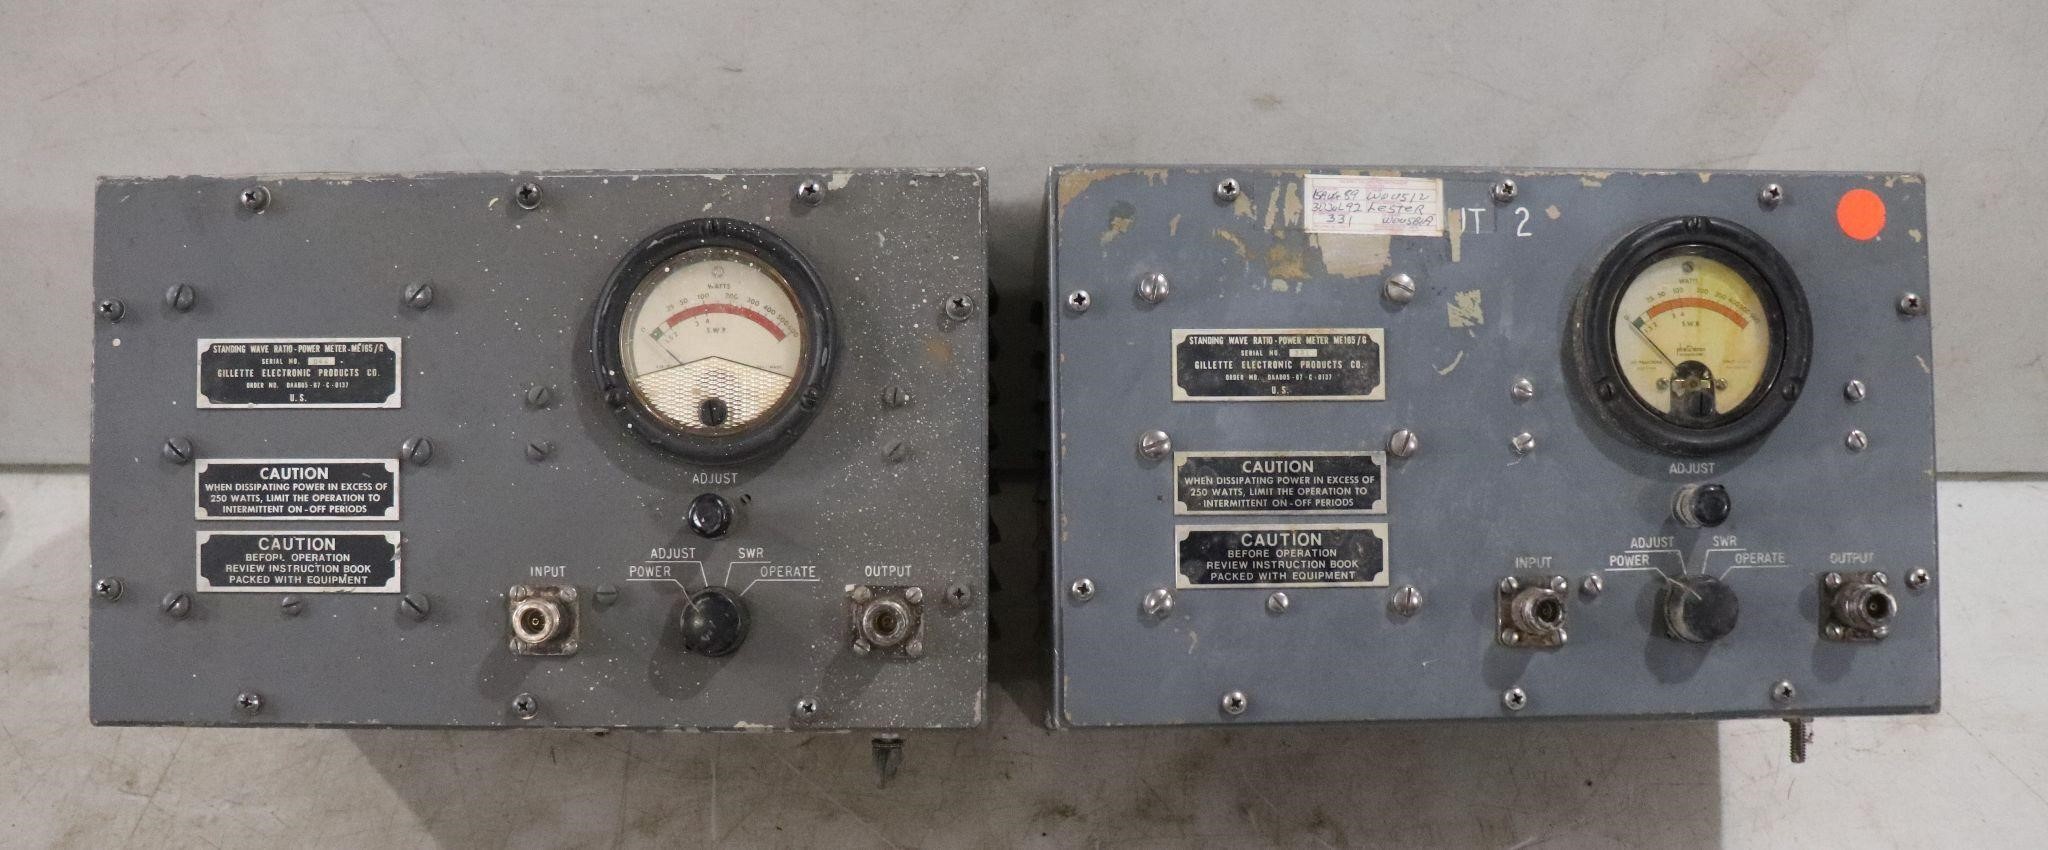 (2) Standing Wave Radio Power Meters